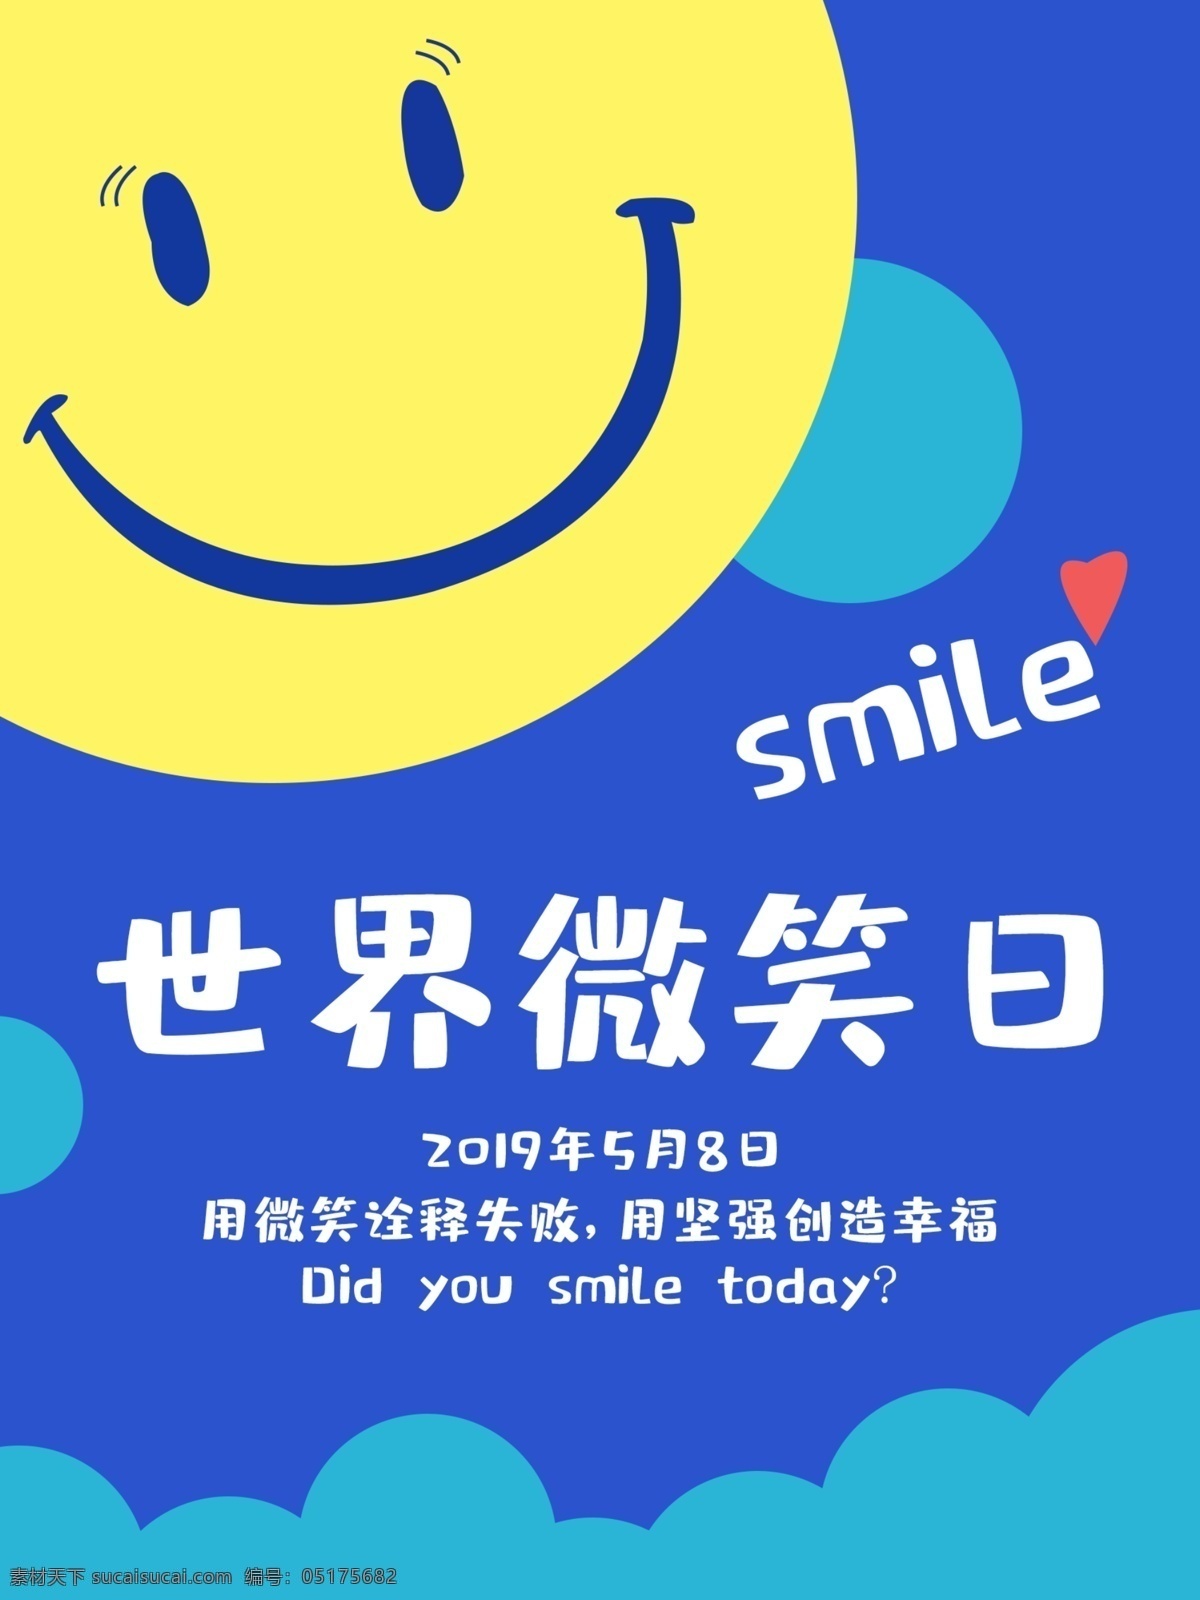 世界 微笑 日 公益 海报 世界微笑日 smile 扁平 ps